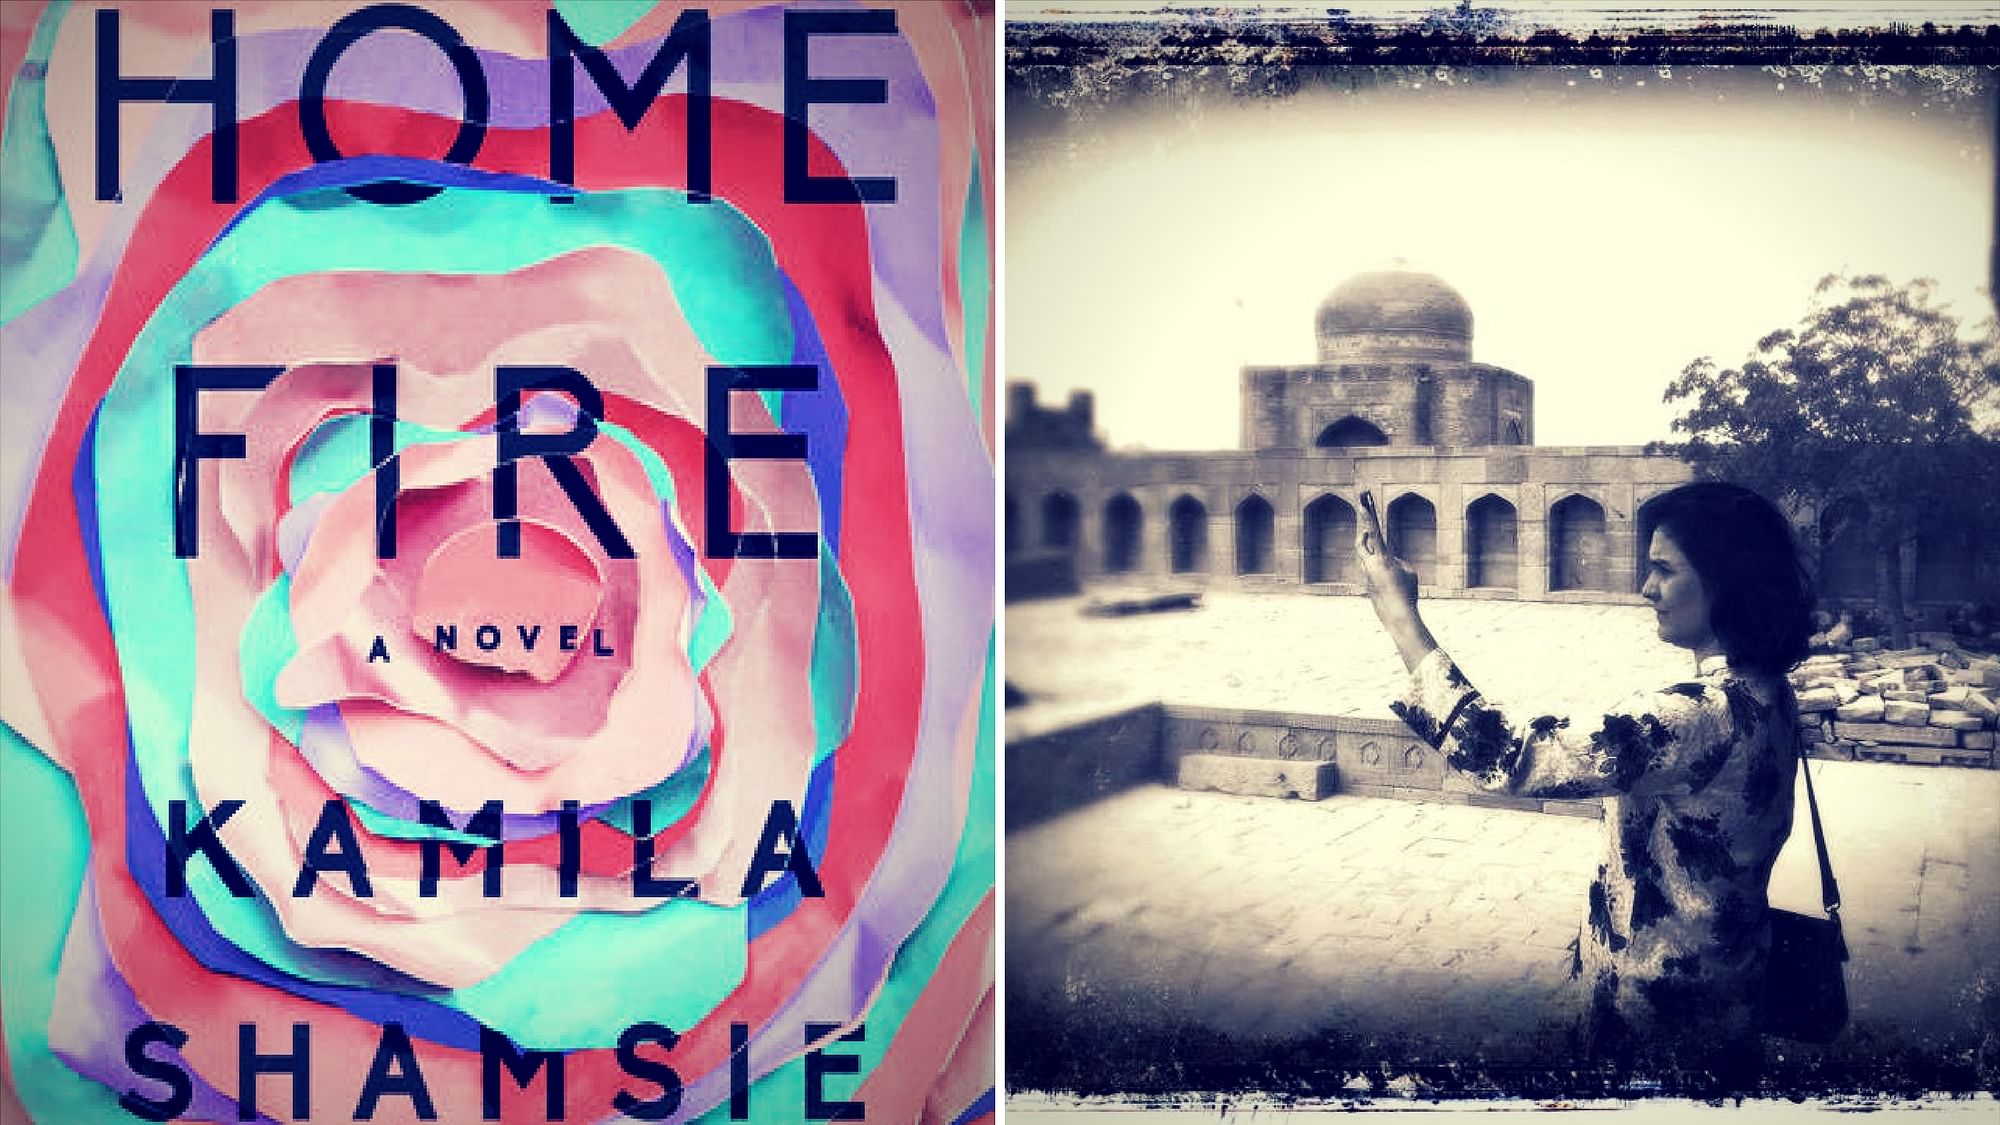 Pakistani novelist Kamila Shamsie’s novel, <i>Home Fire</i>, has earned a place on the Man Booker Longlist this year.